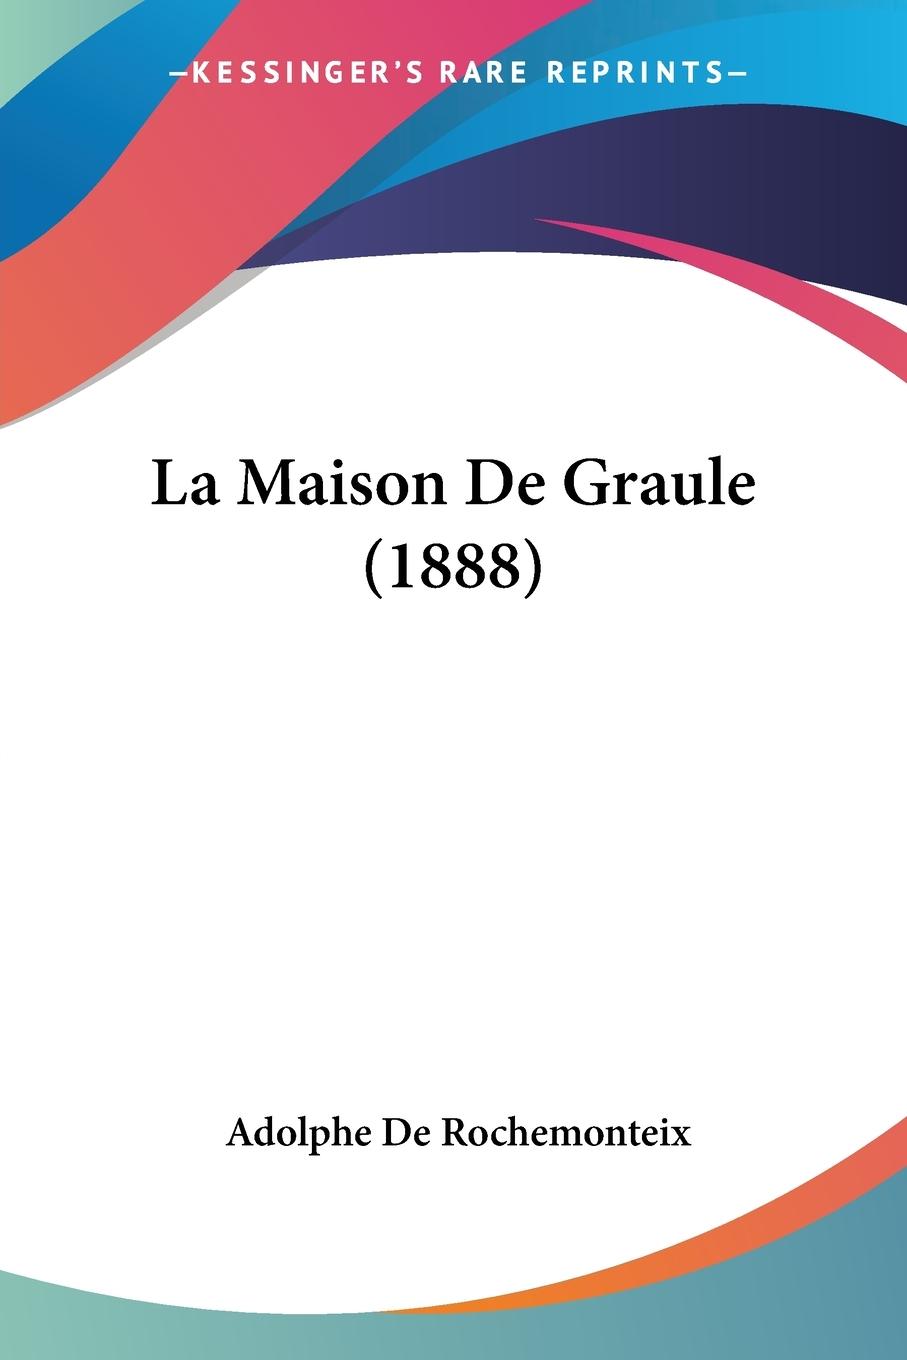 La Maison De Graule (1888) - De Rochemonteix, Adolphe